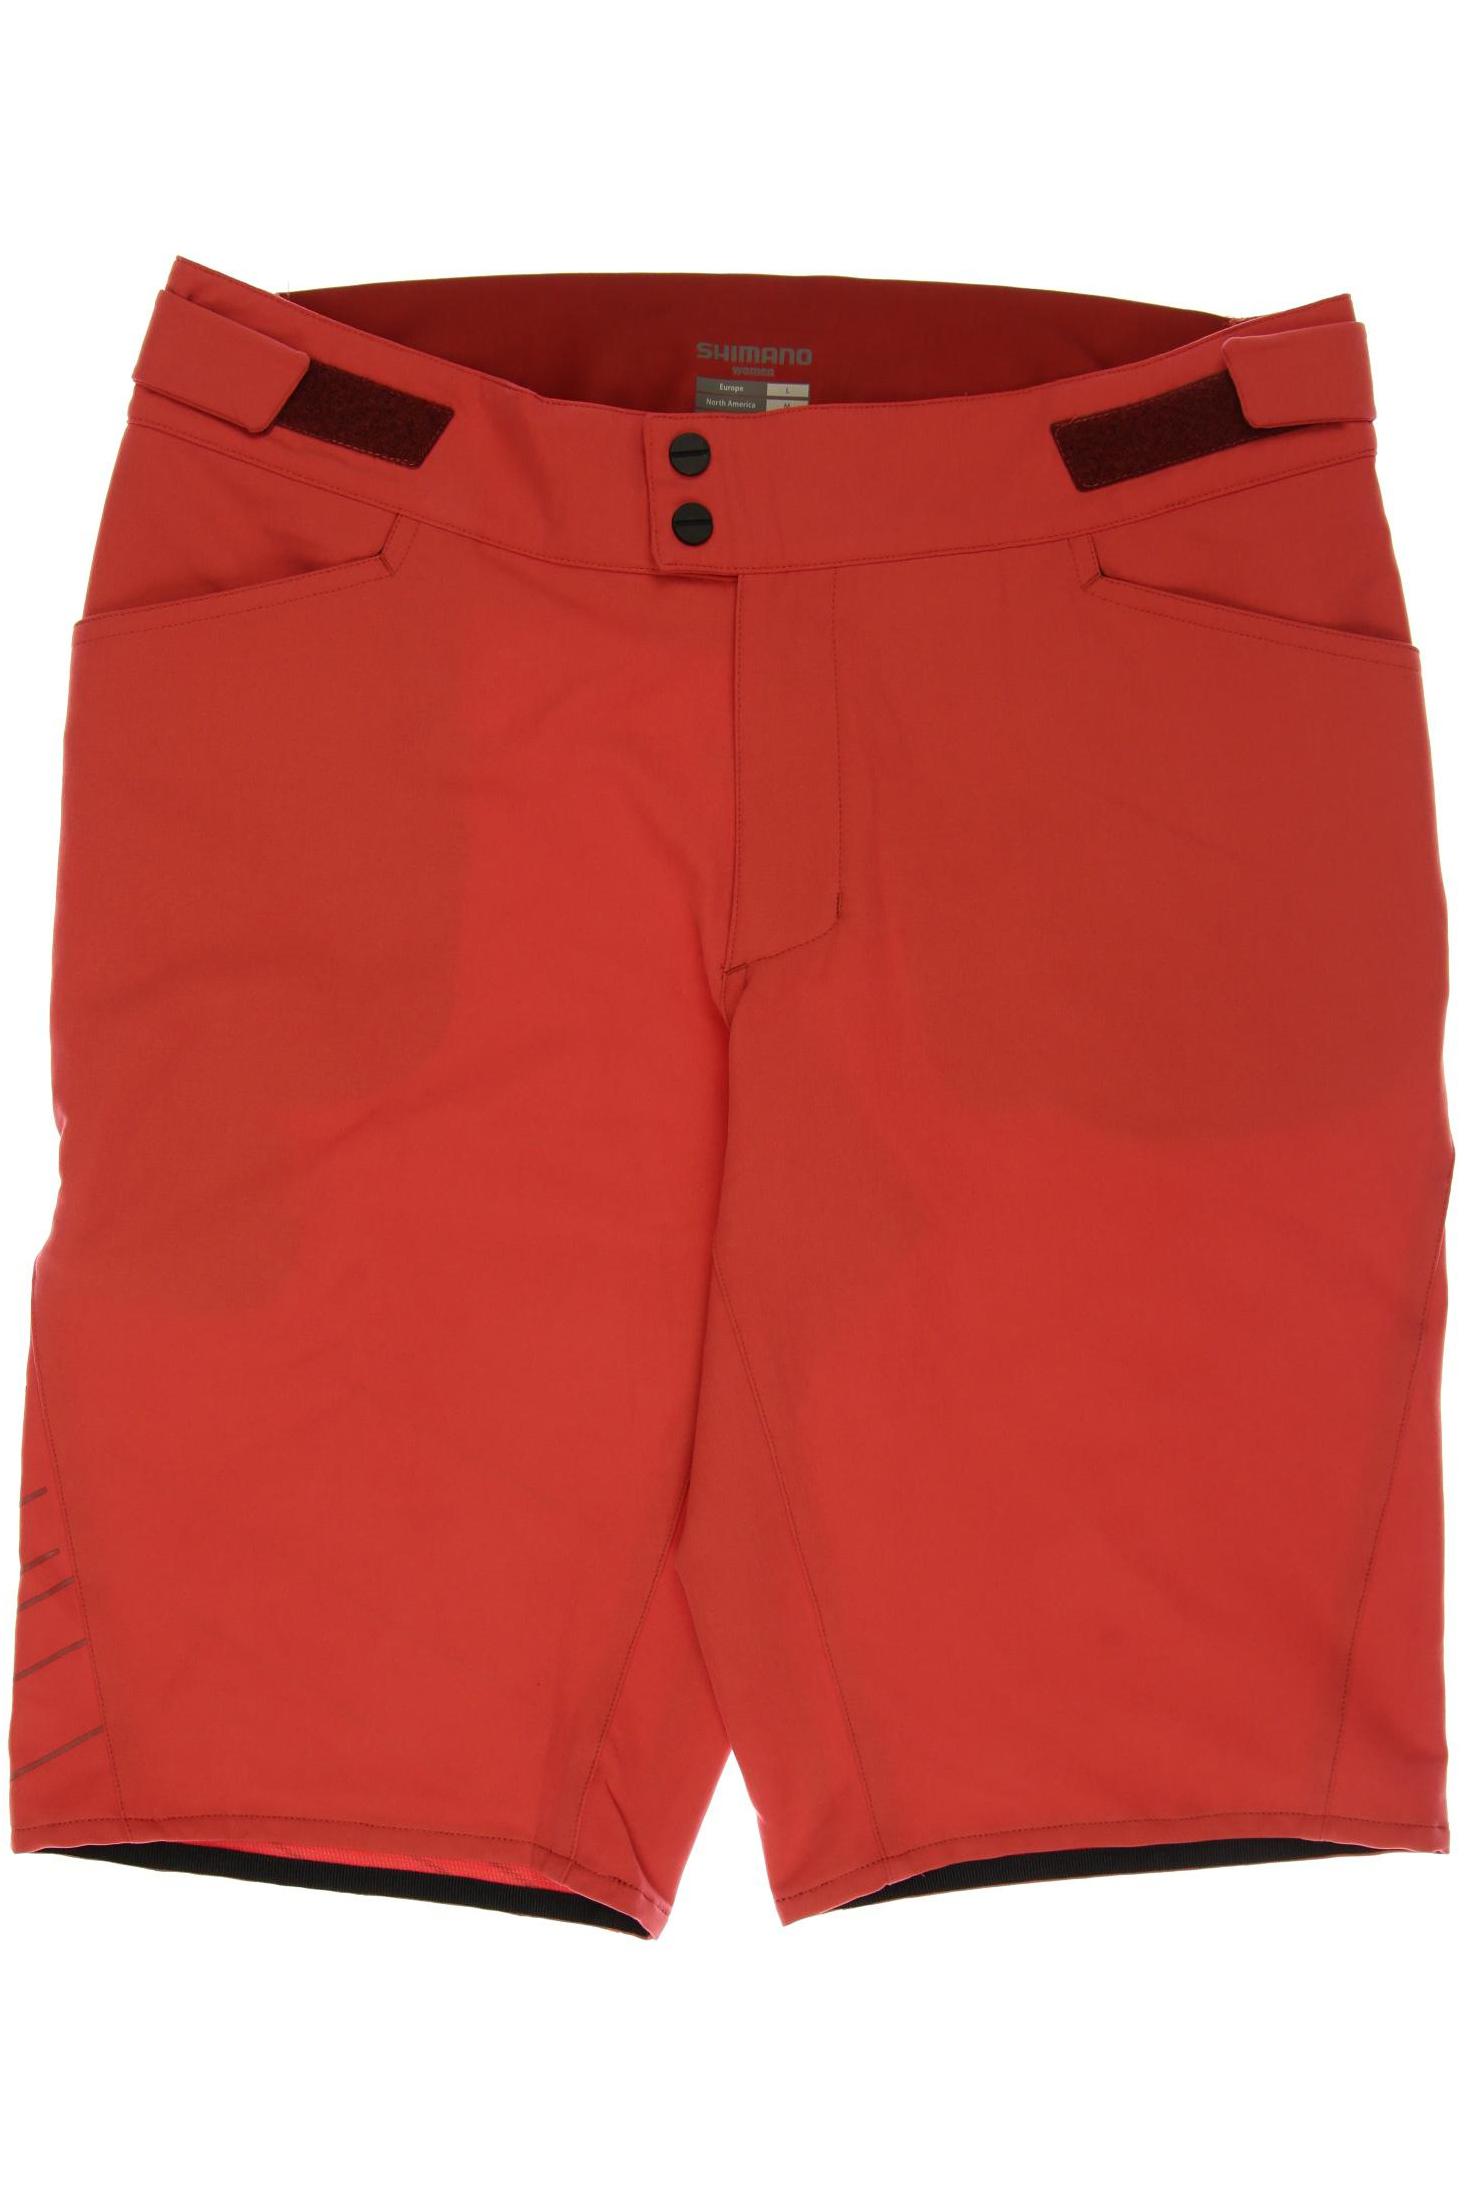 Shimano Damen Shorts, rot von Shimano